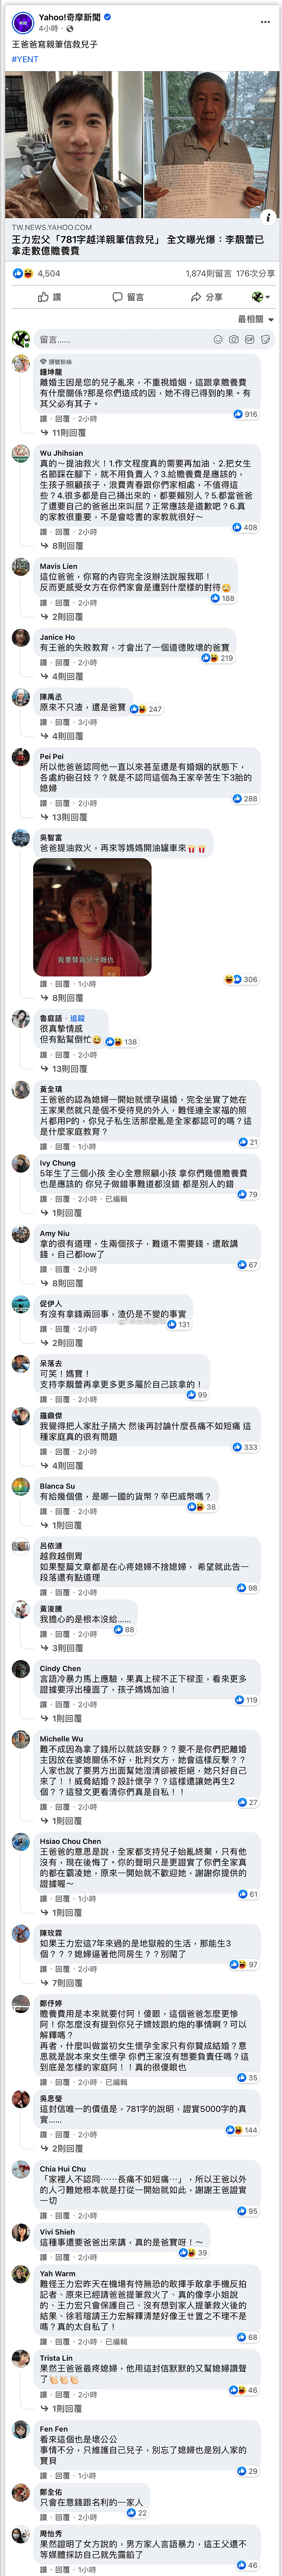 李靓蕾发文反驳王力宏父亲，台湾网友评论亮点多，调侃爸爸帮倒忙 - 13